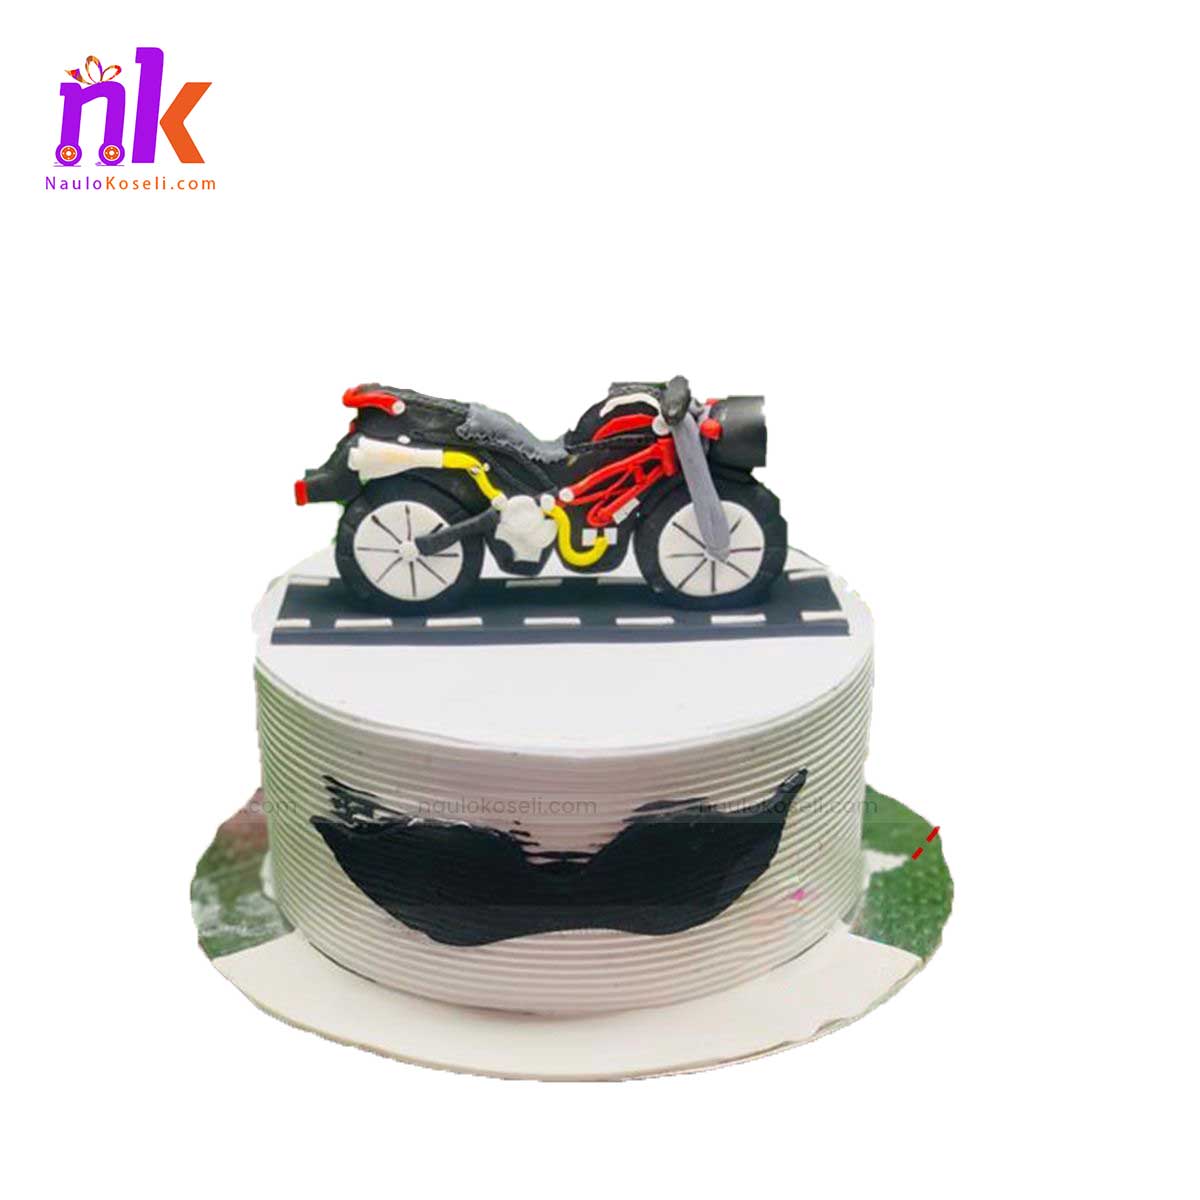 Bike Theme Cake in Nepal